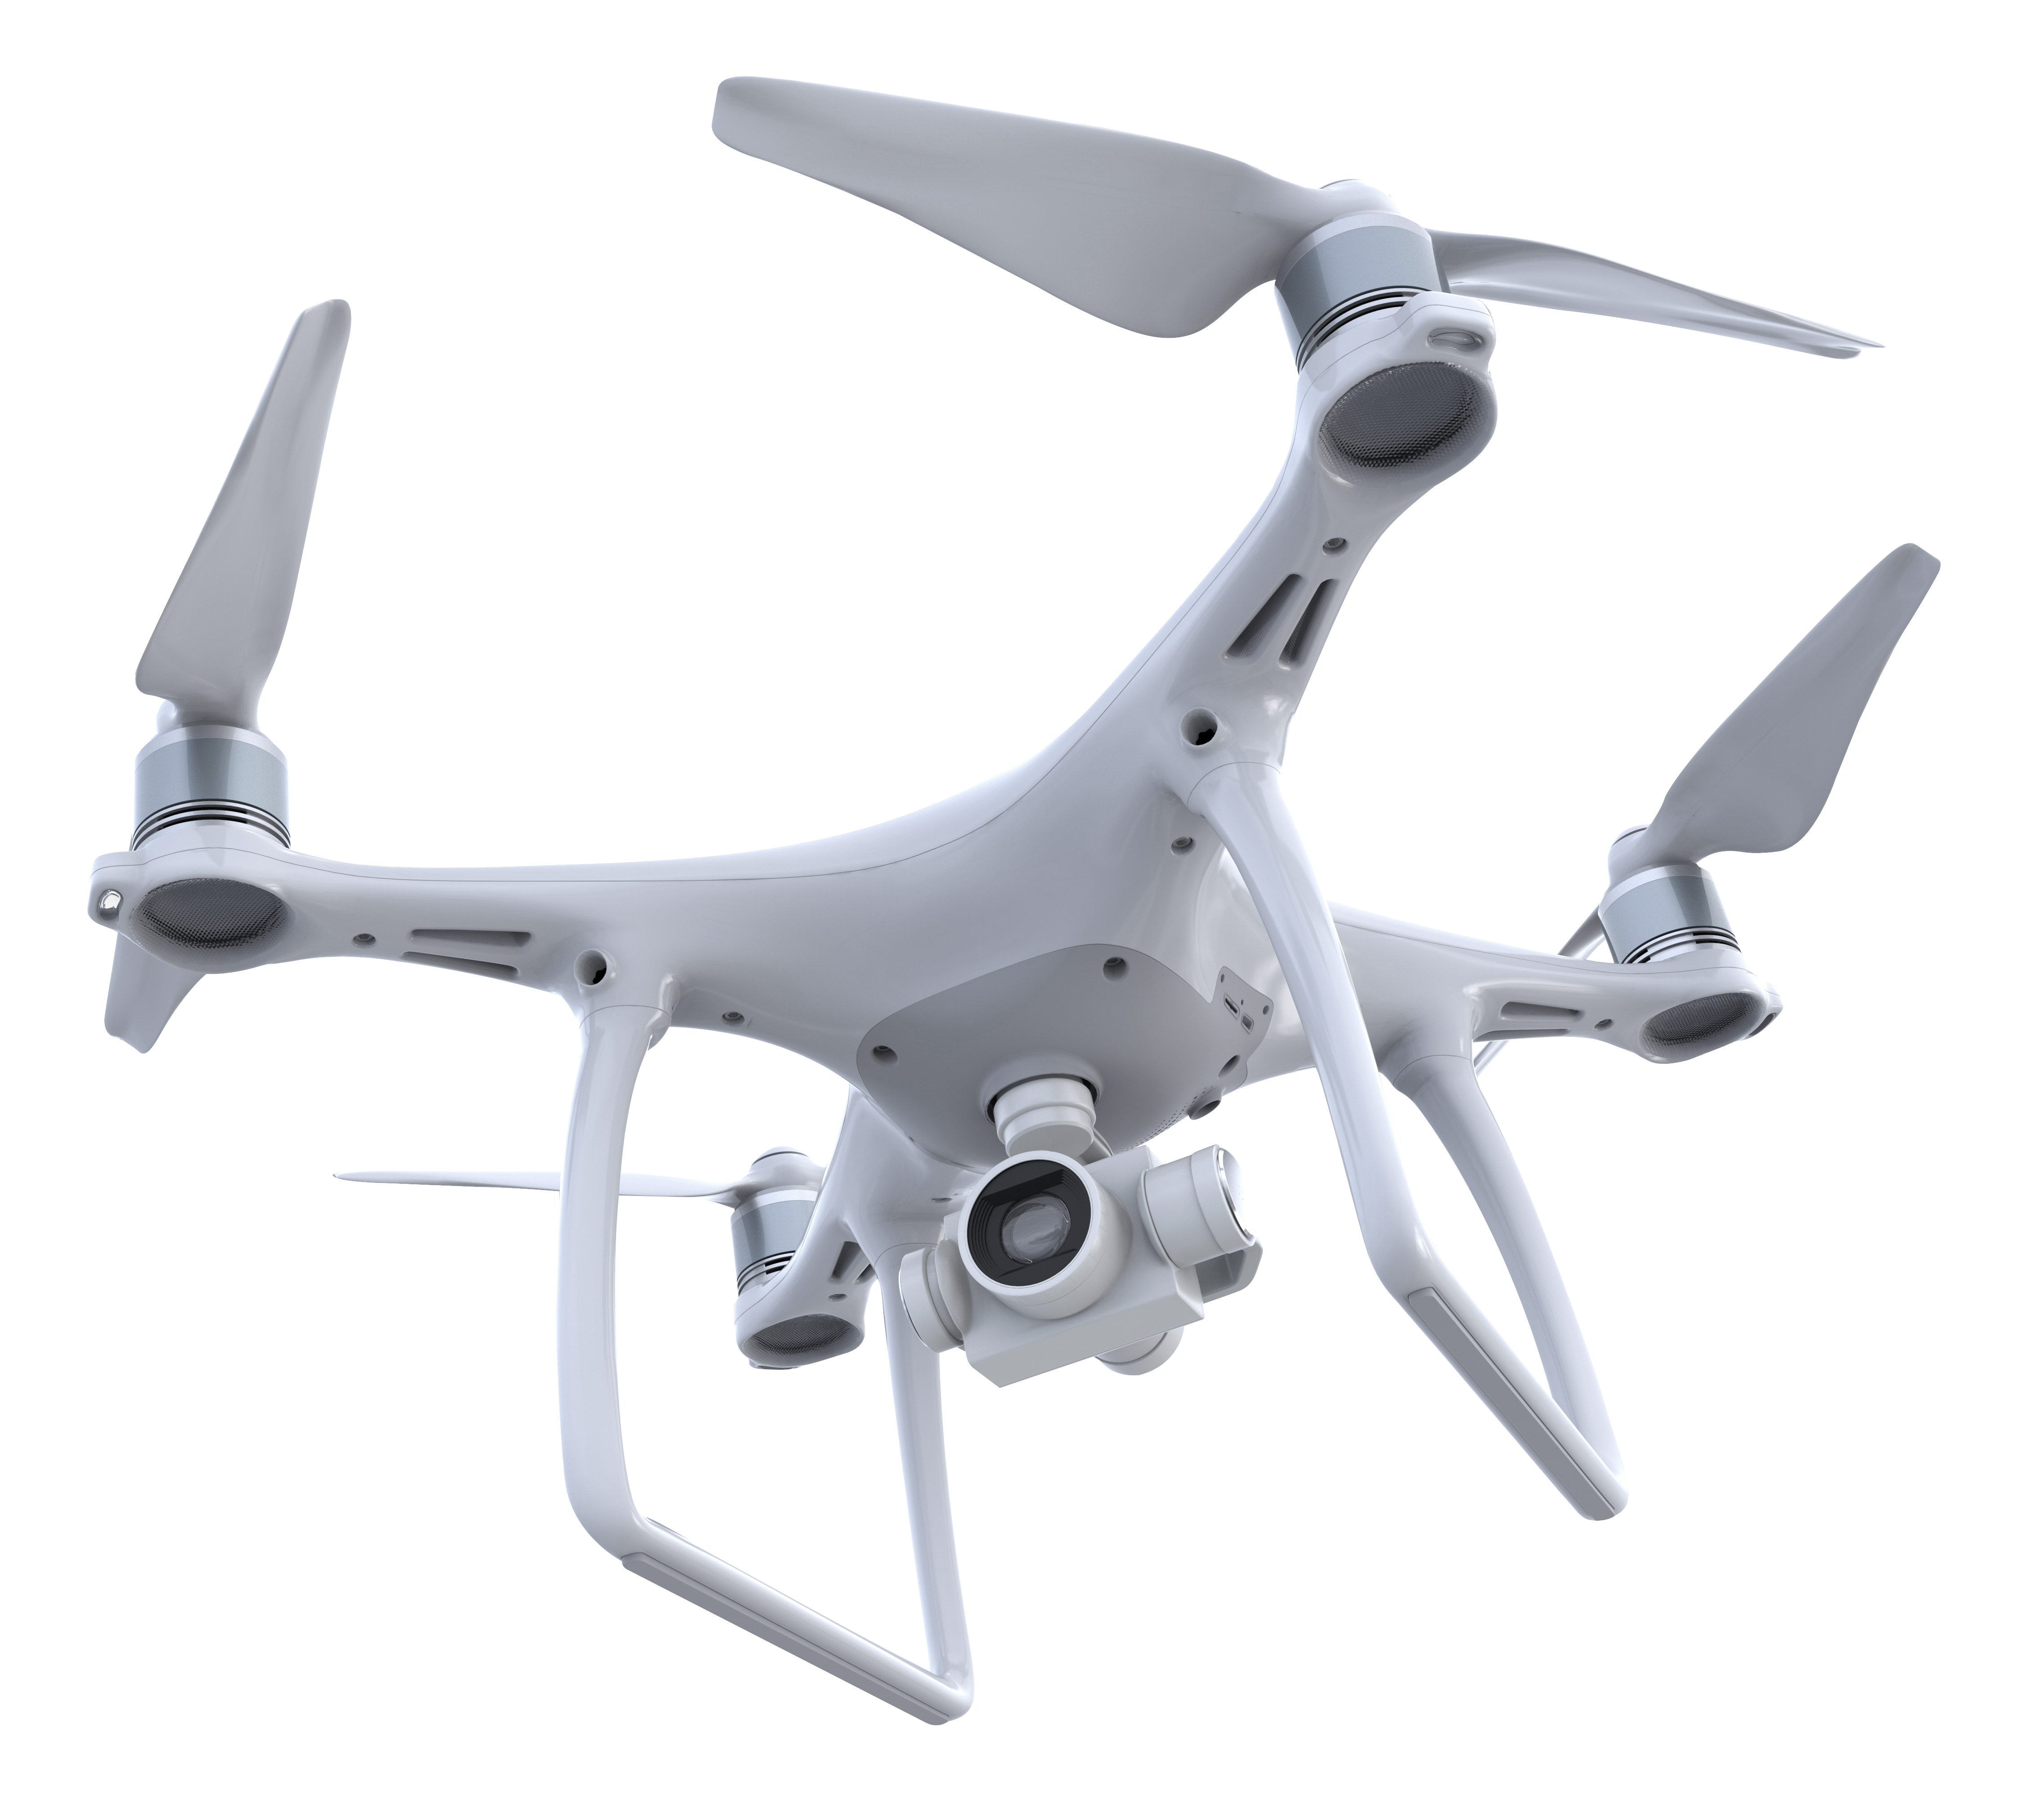 White drone